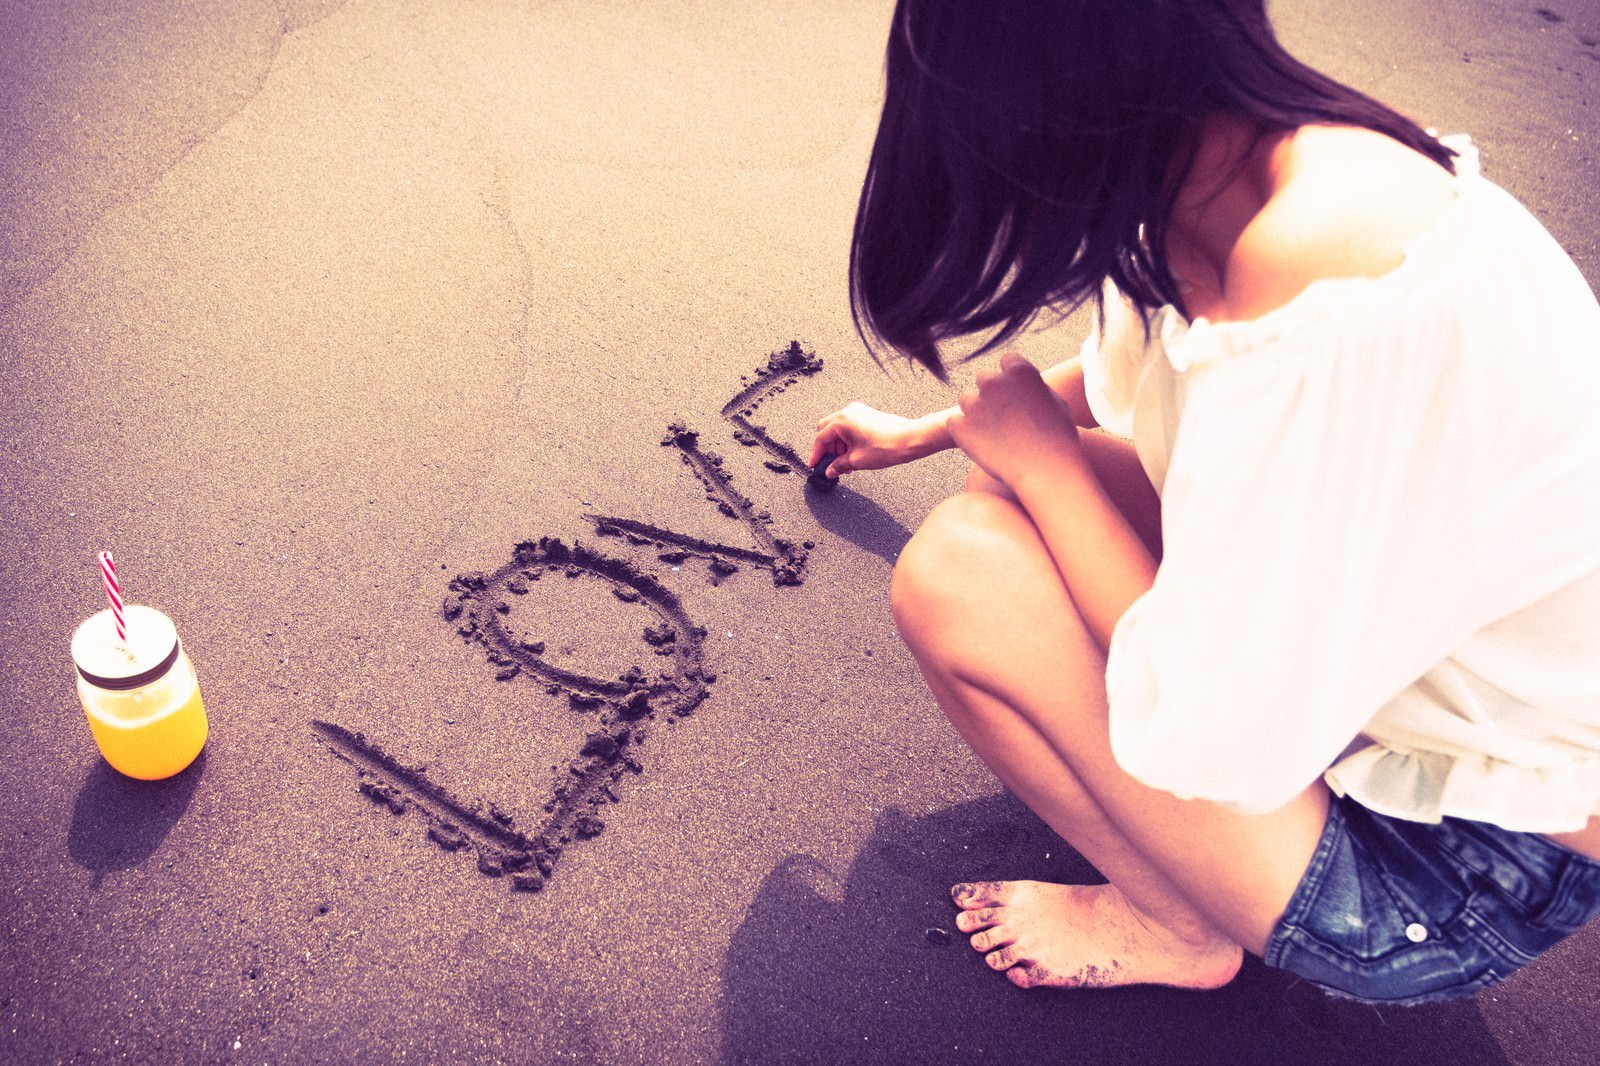 「砂の上にLOVEと文字を書く女性のうしろ姿」の写真